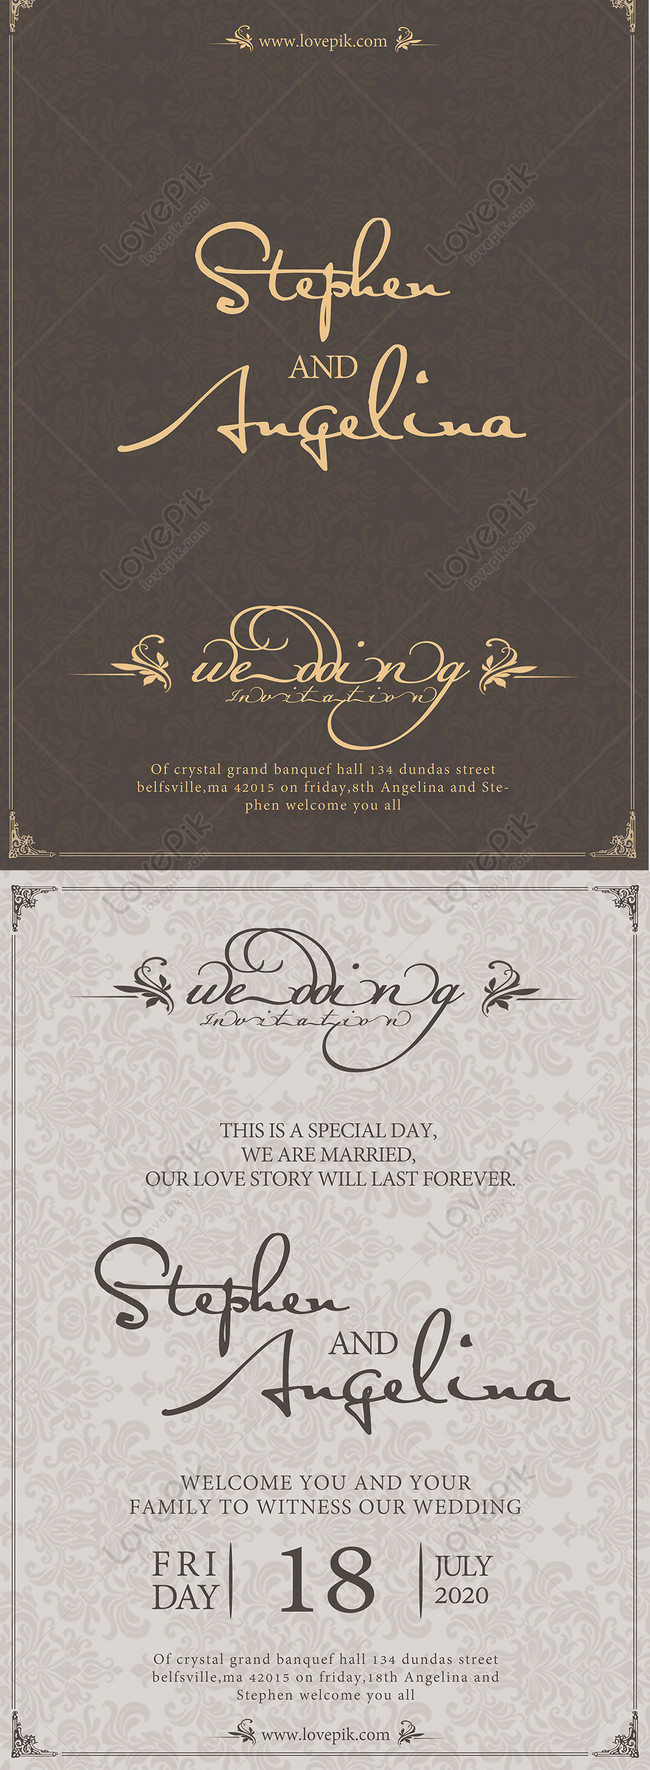 英語の手書きの結婚式の招待状のデザインイメージ テンプレート Id 450000223 Prf画像フォーマットpsd Jp Lovepik Com